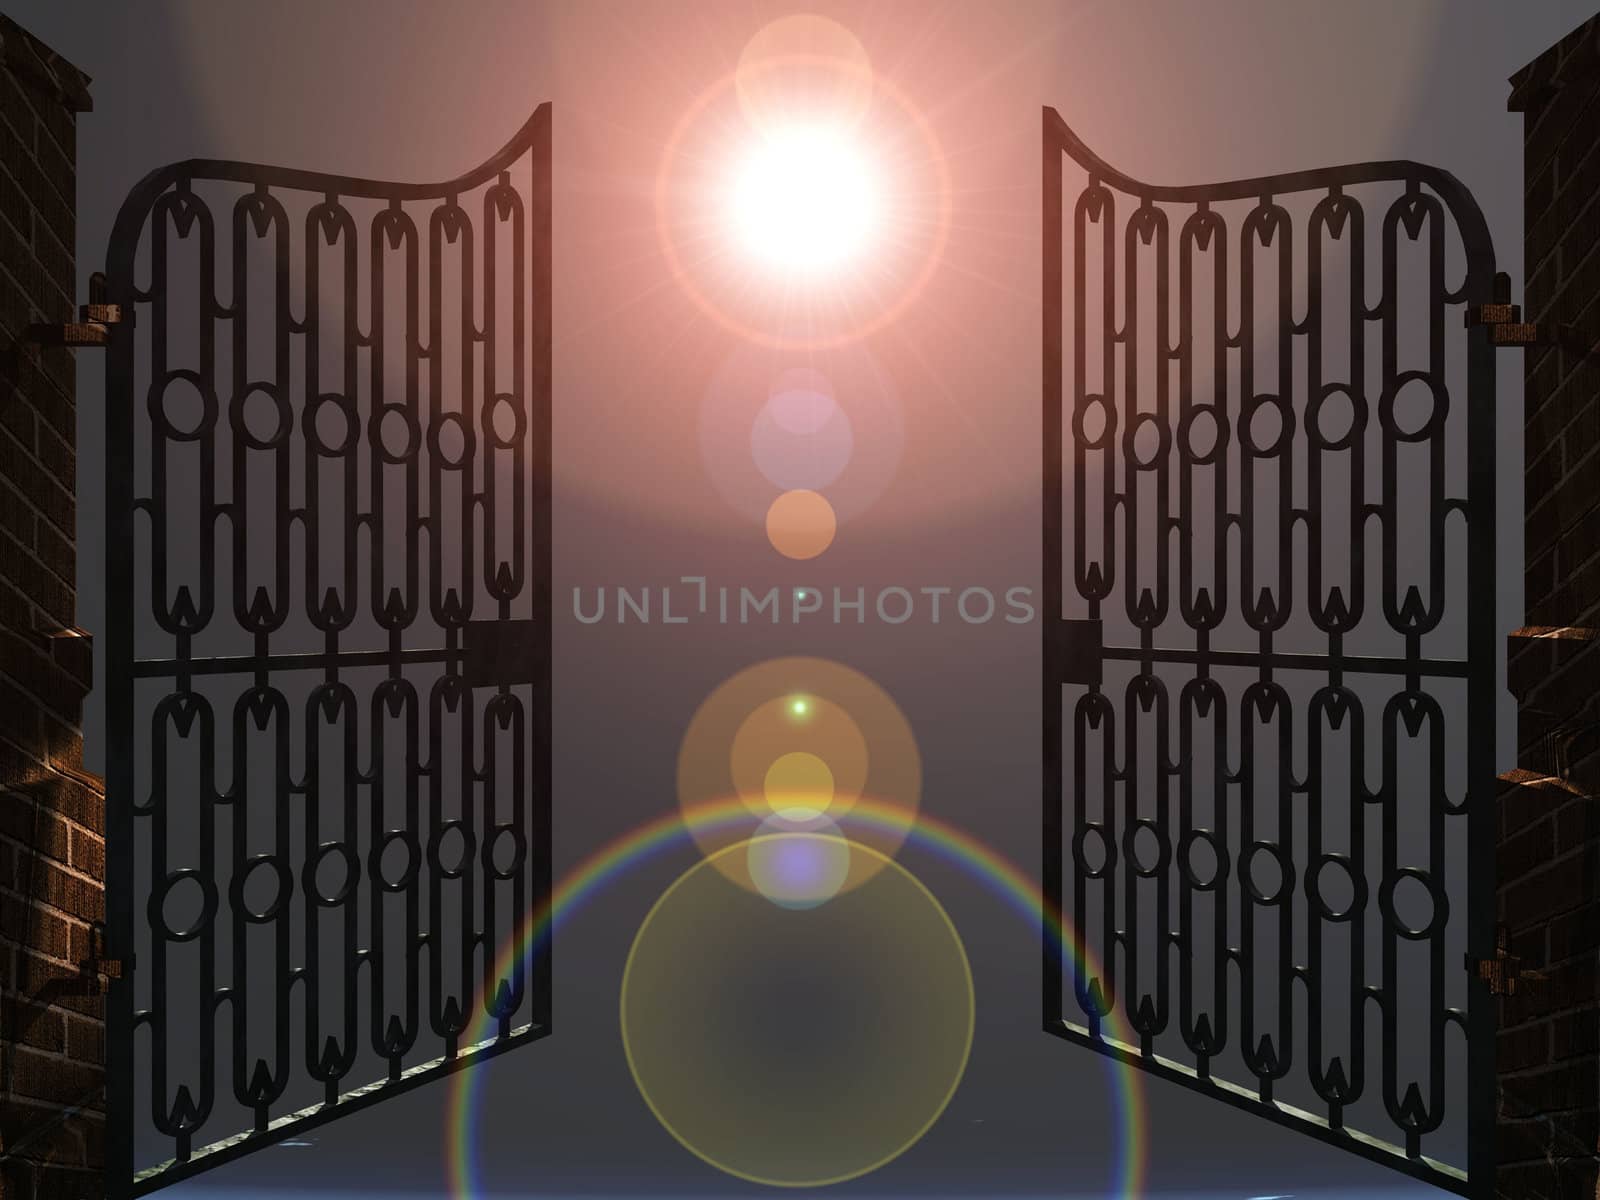 the gates of heaven by njaj